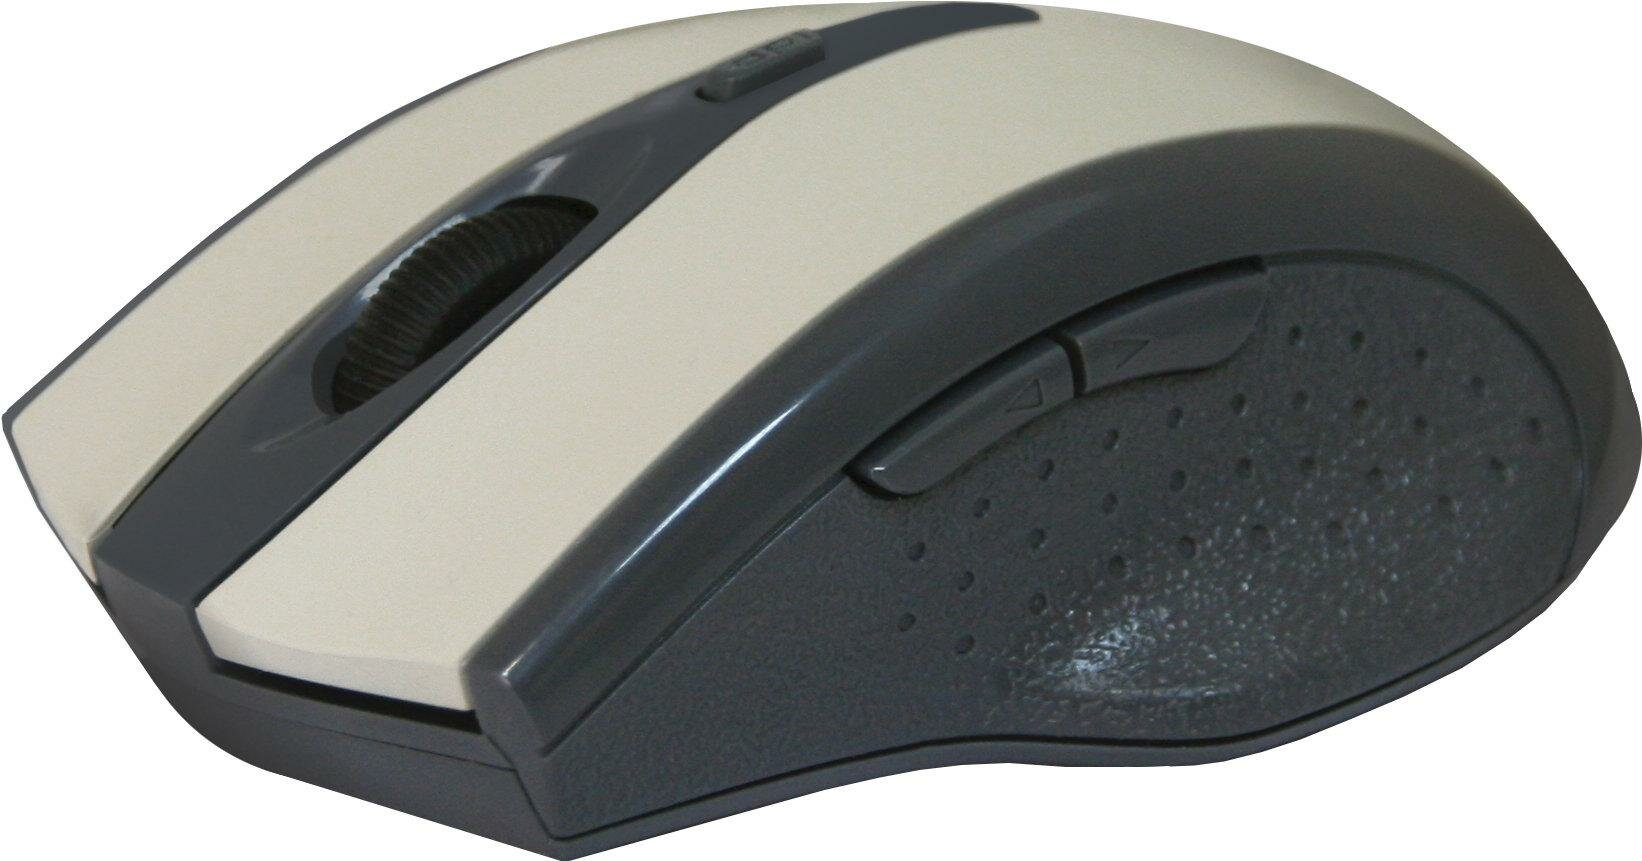 Мышь беспроводная Defender Accura MM-665 Grey USB оптическая, 1600 dpi, 5 кнопок + колесо